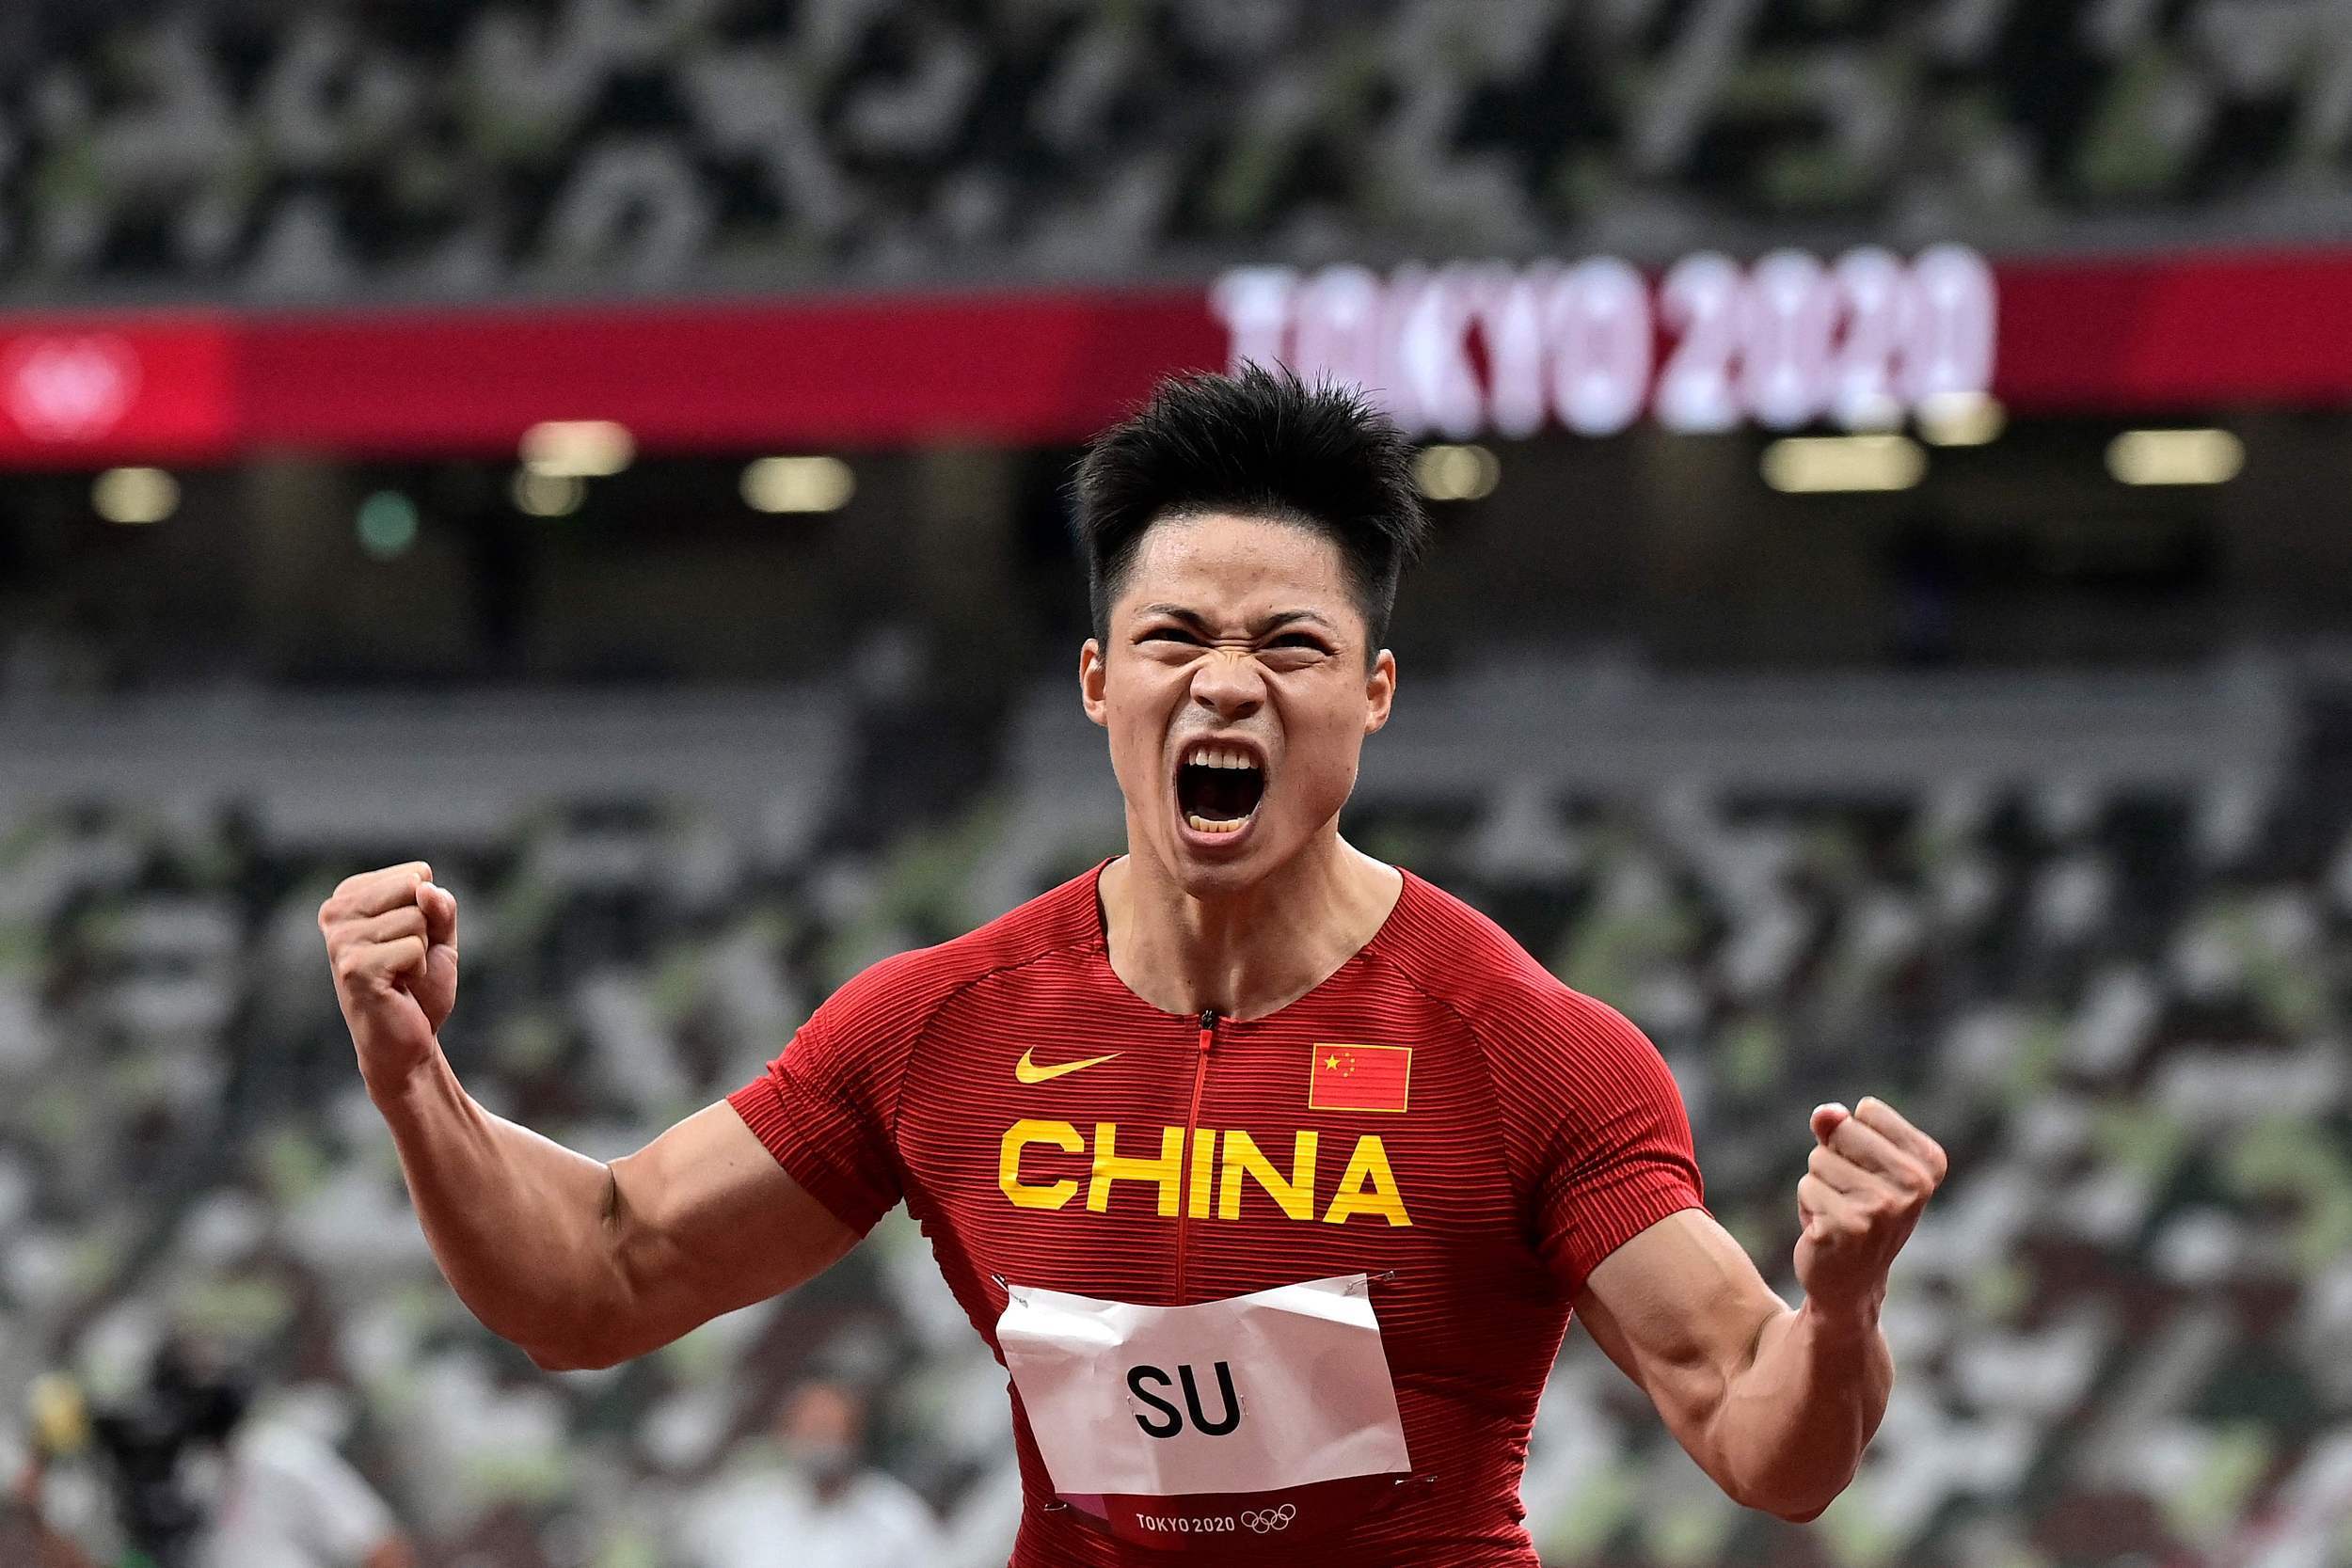 中国第一人!苏炳添晋级东京奥运会男子100米决赛